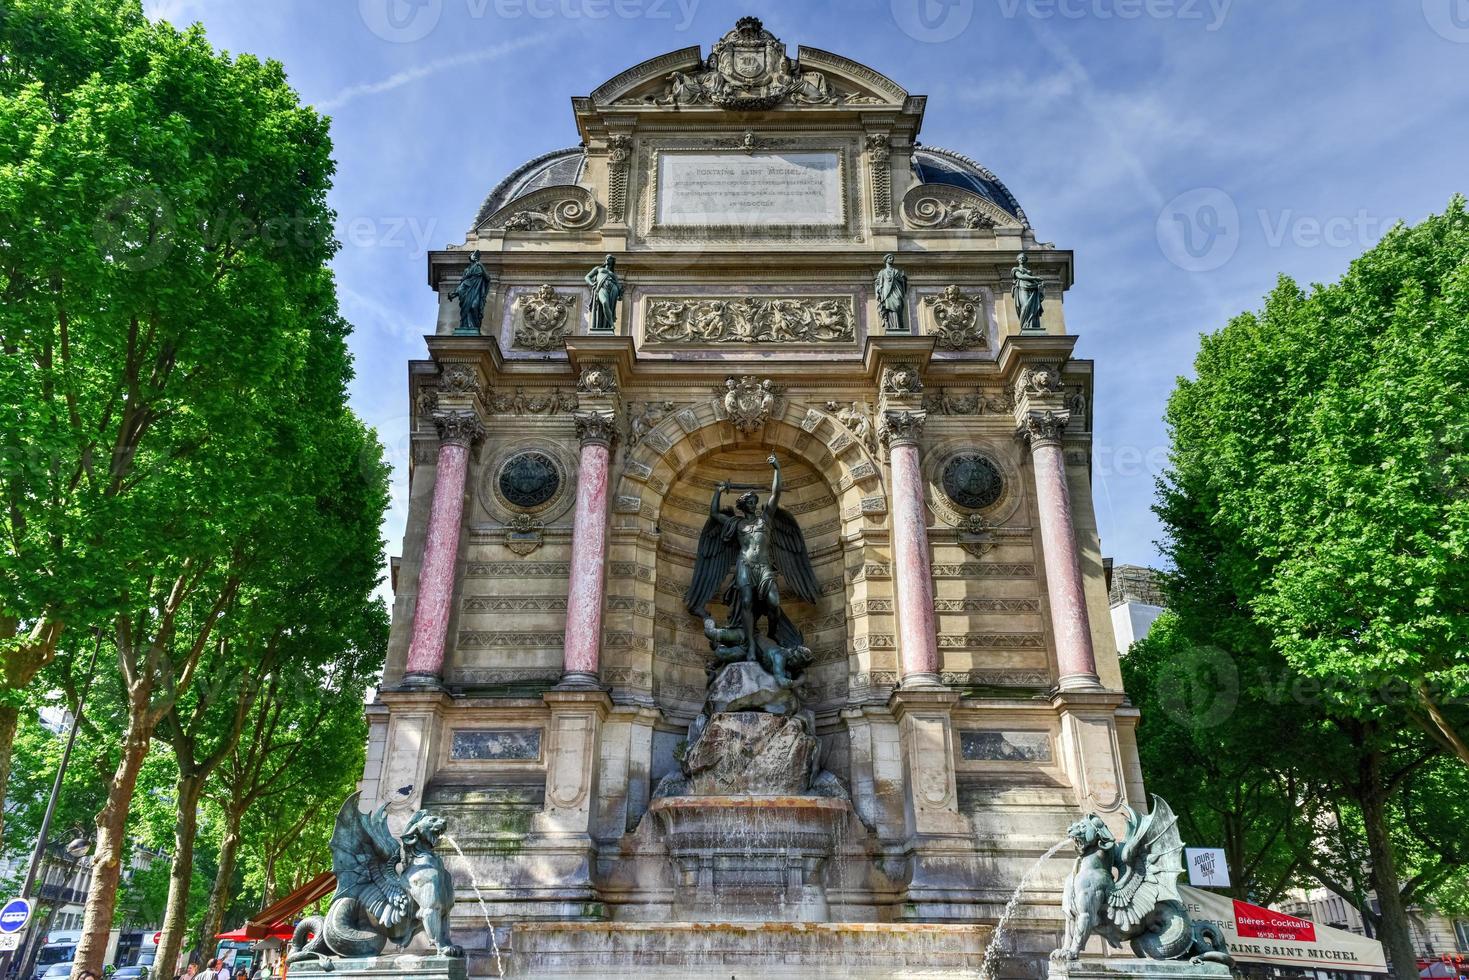 thefontaine saintmichel är en monumentalfontänplacerad på plats saintmichelin den 5:e arrondissementin paris foto